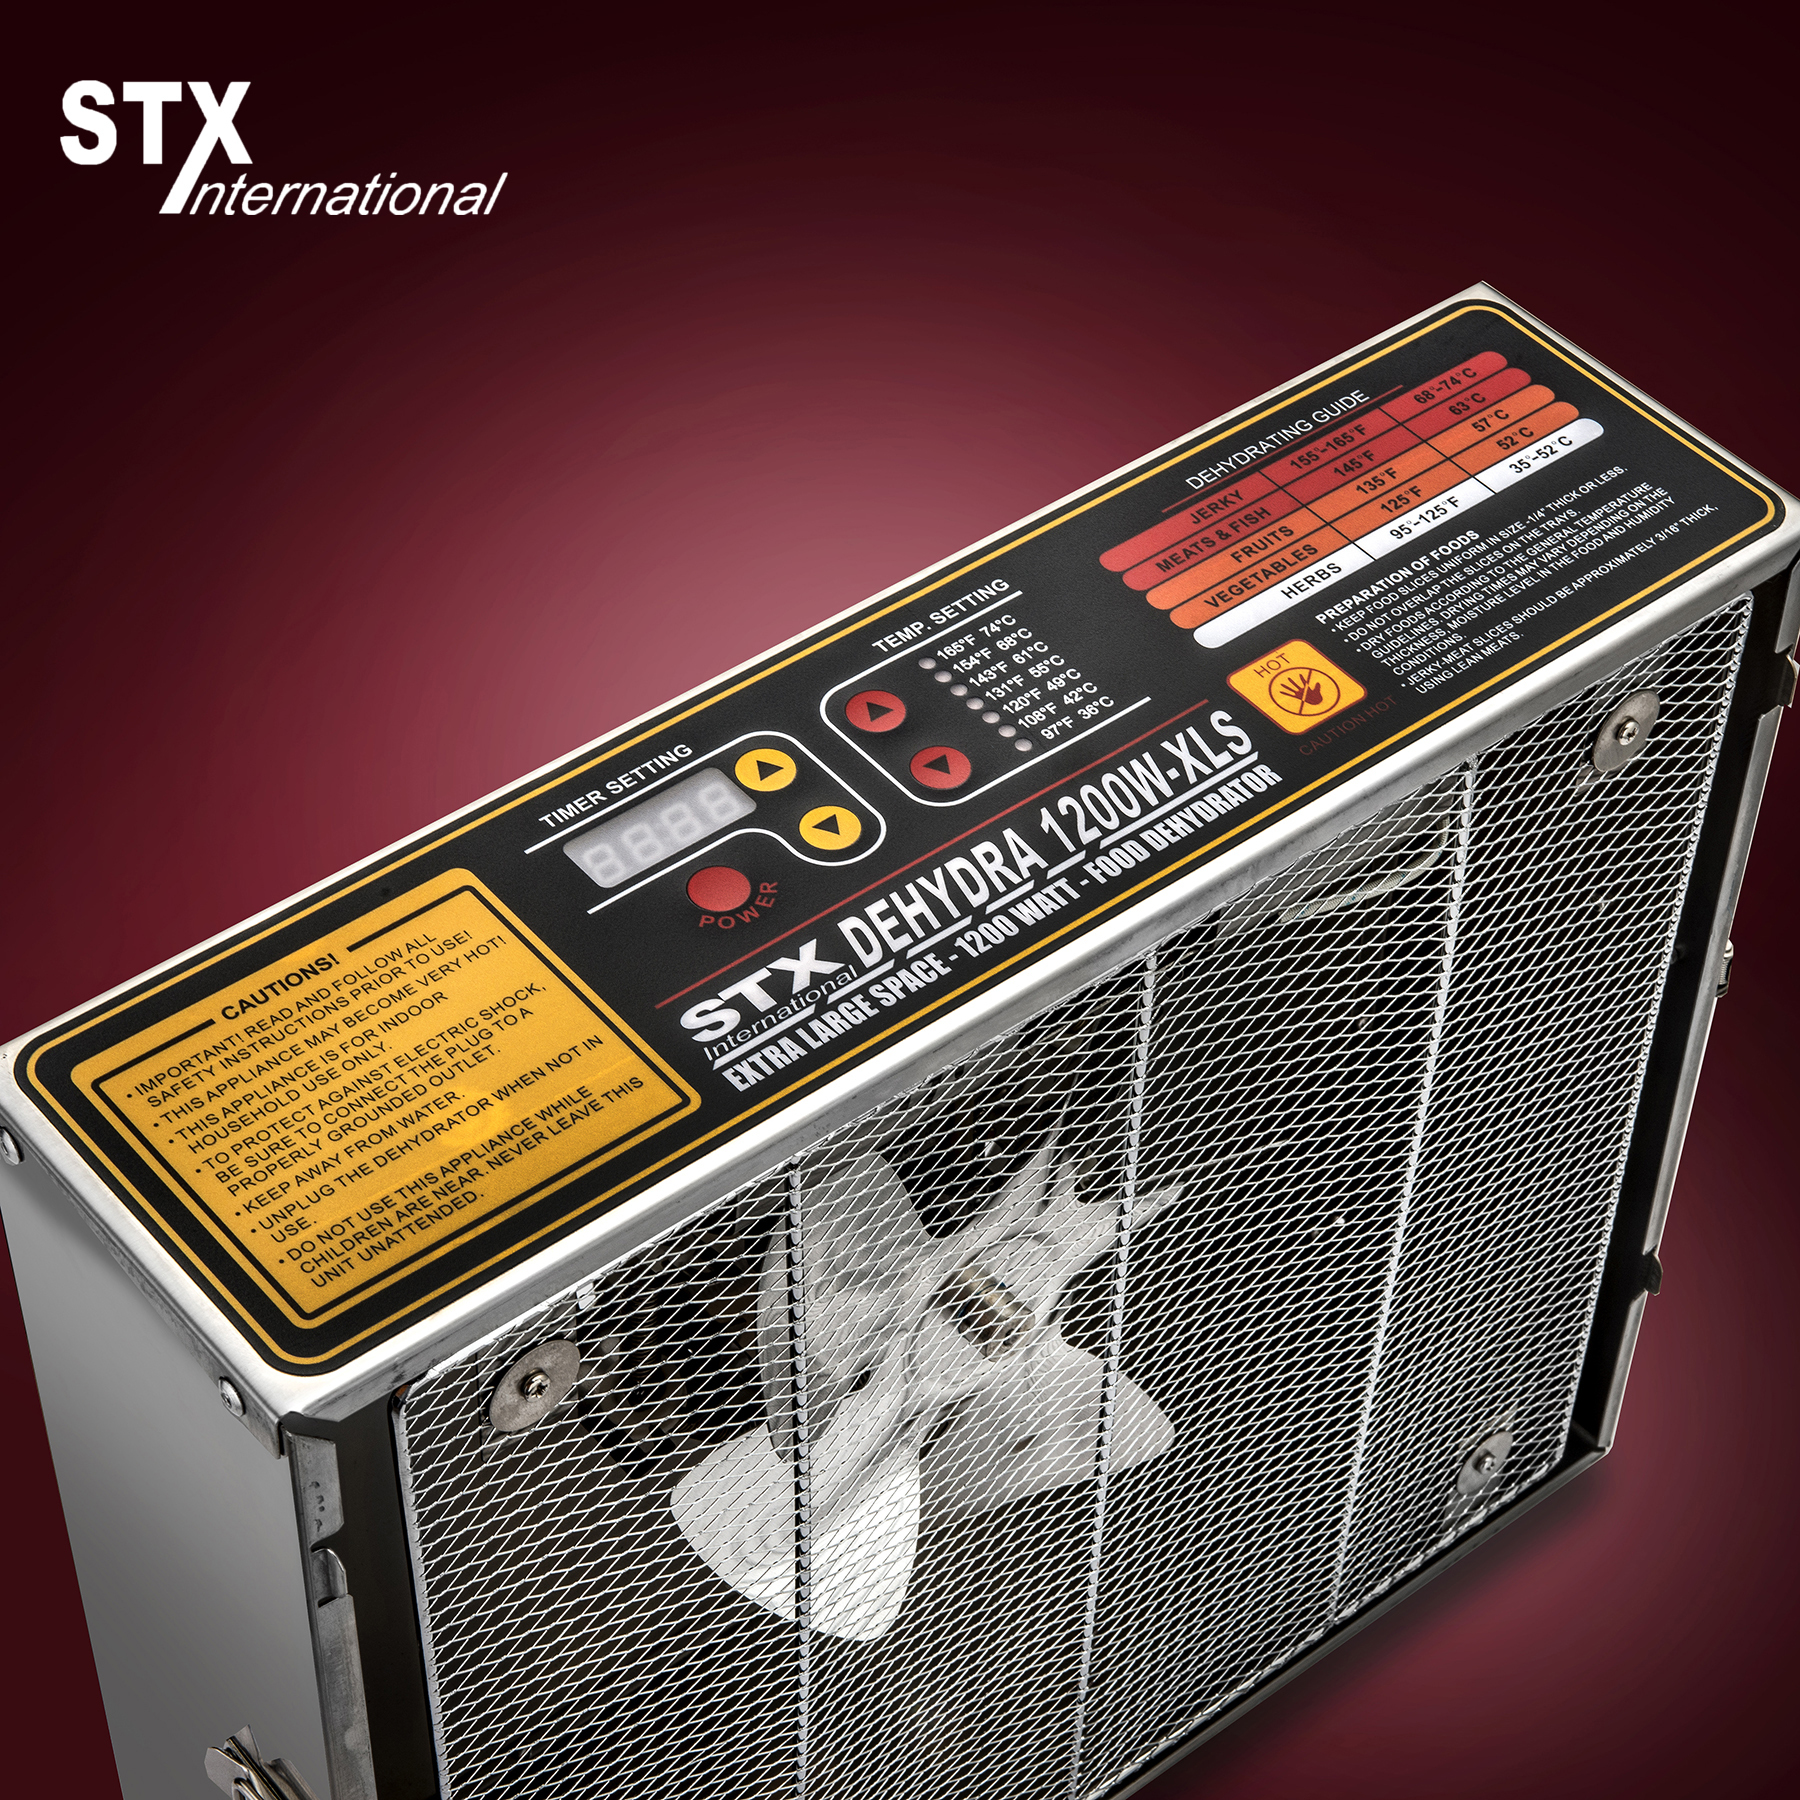 STX Dehydra 1200W-XLS 10 Tray Stainless Steel Food Dehydrator - 165°F Jerky Safe